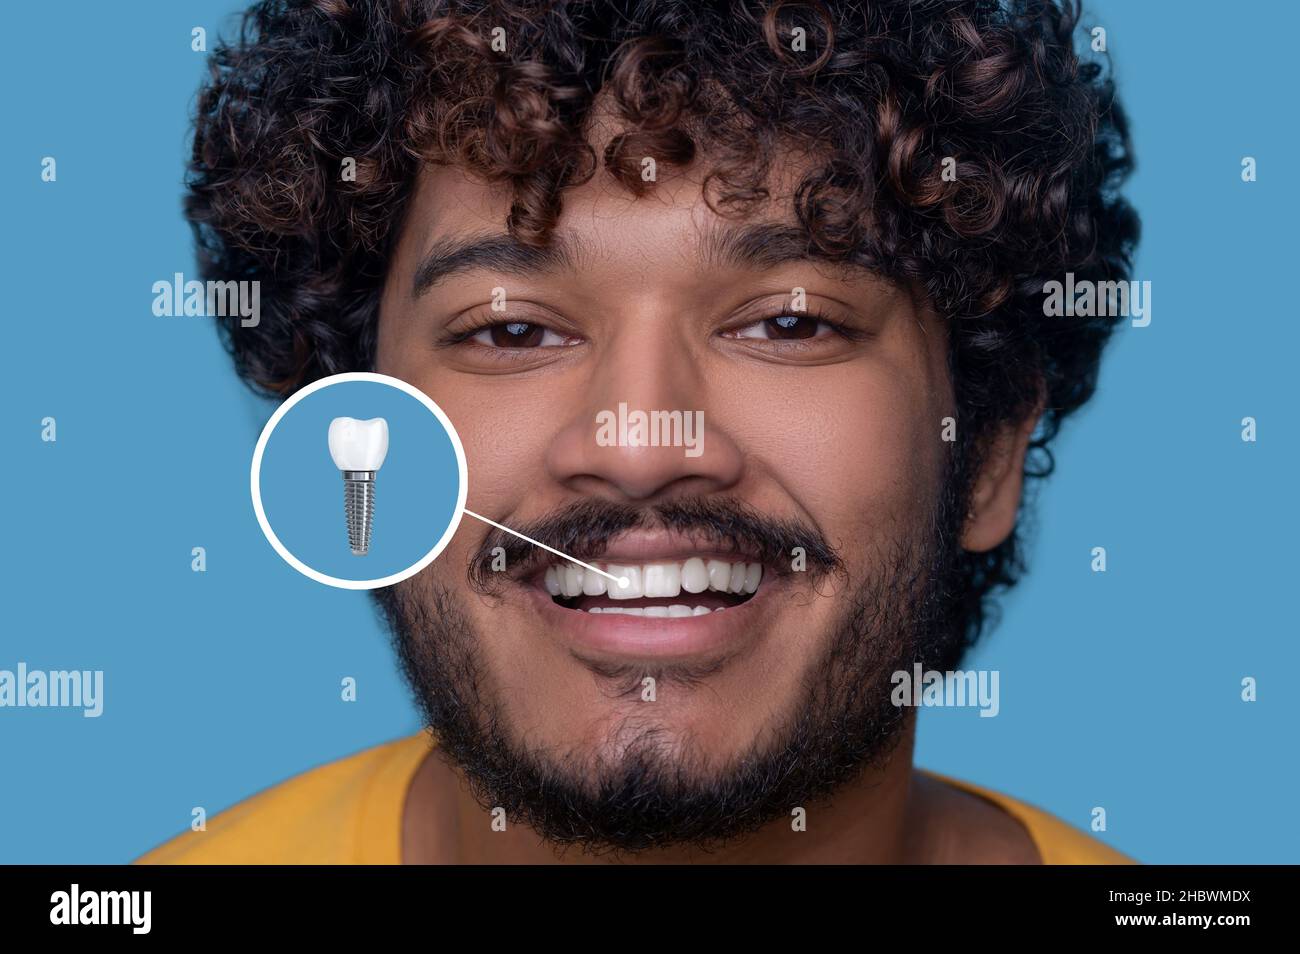 Jeune homme avec un sourire crasseux démontrant son implant dentaire Banque D'Images